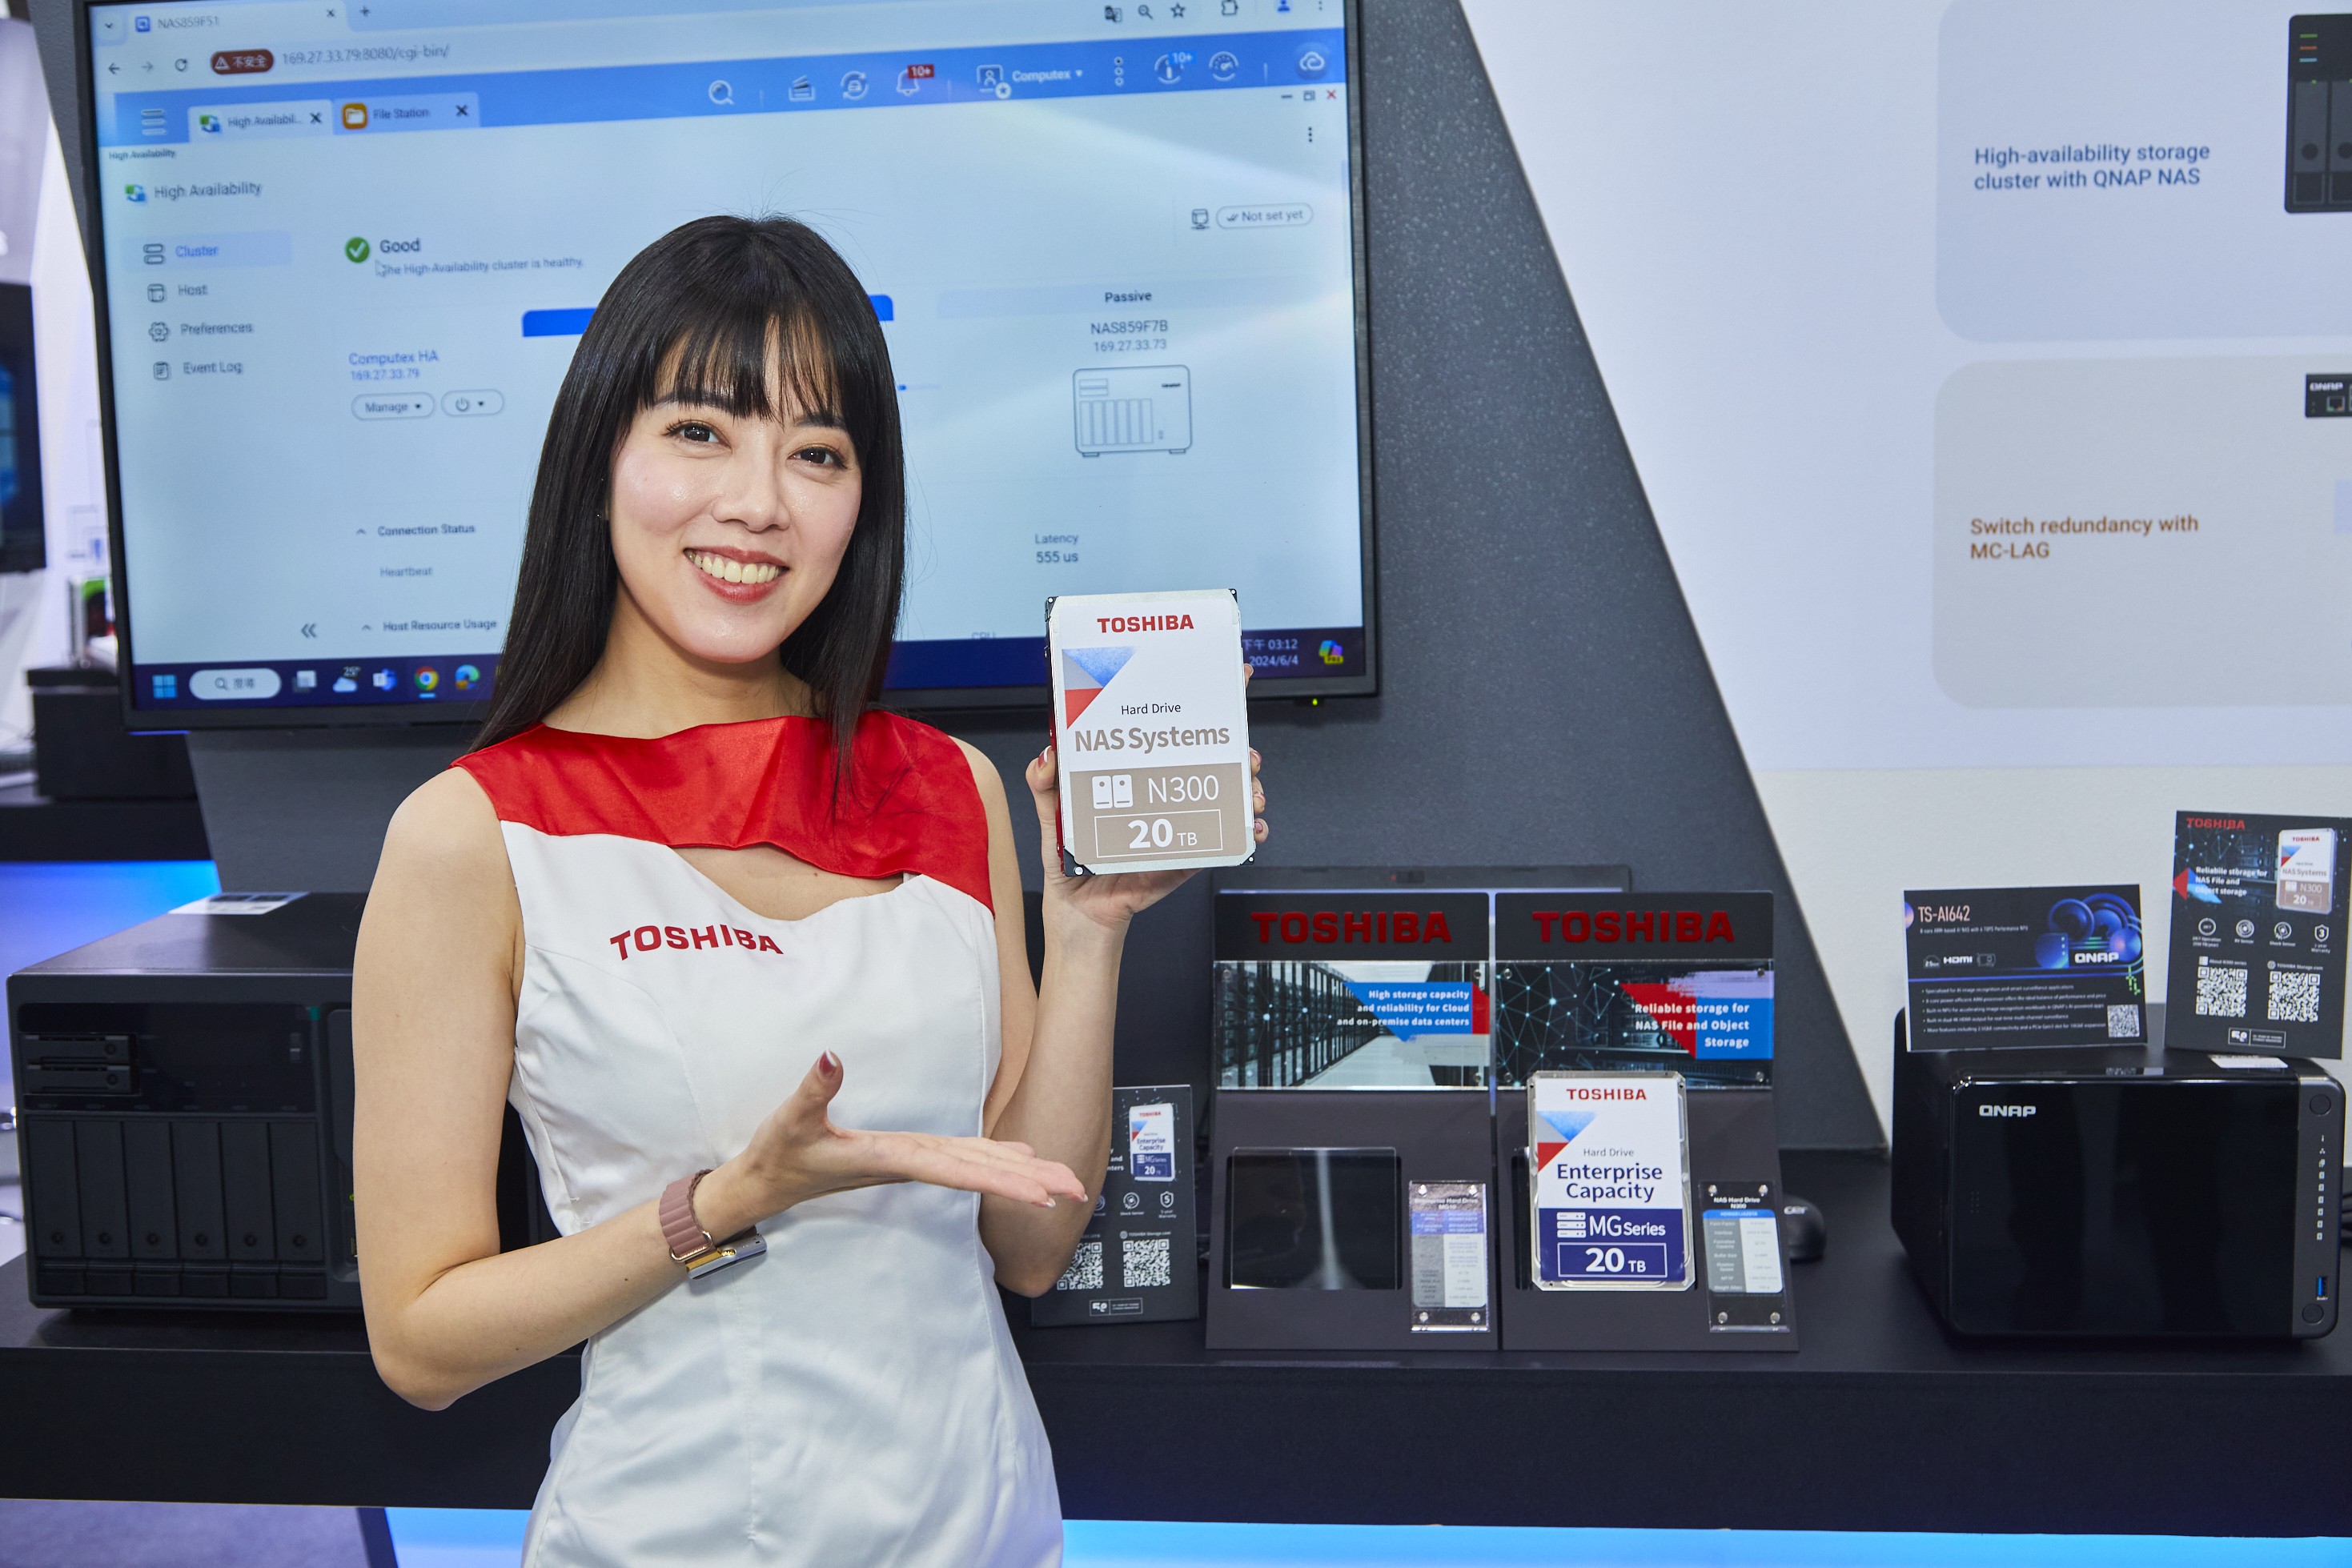 威聯通科技QNAP與Toshiba合作展示企業級硬碟與NAS專用硬碟